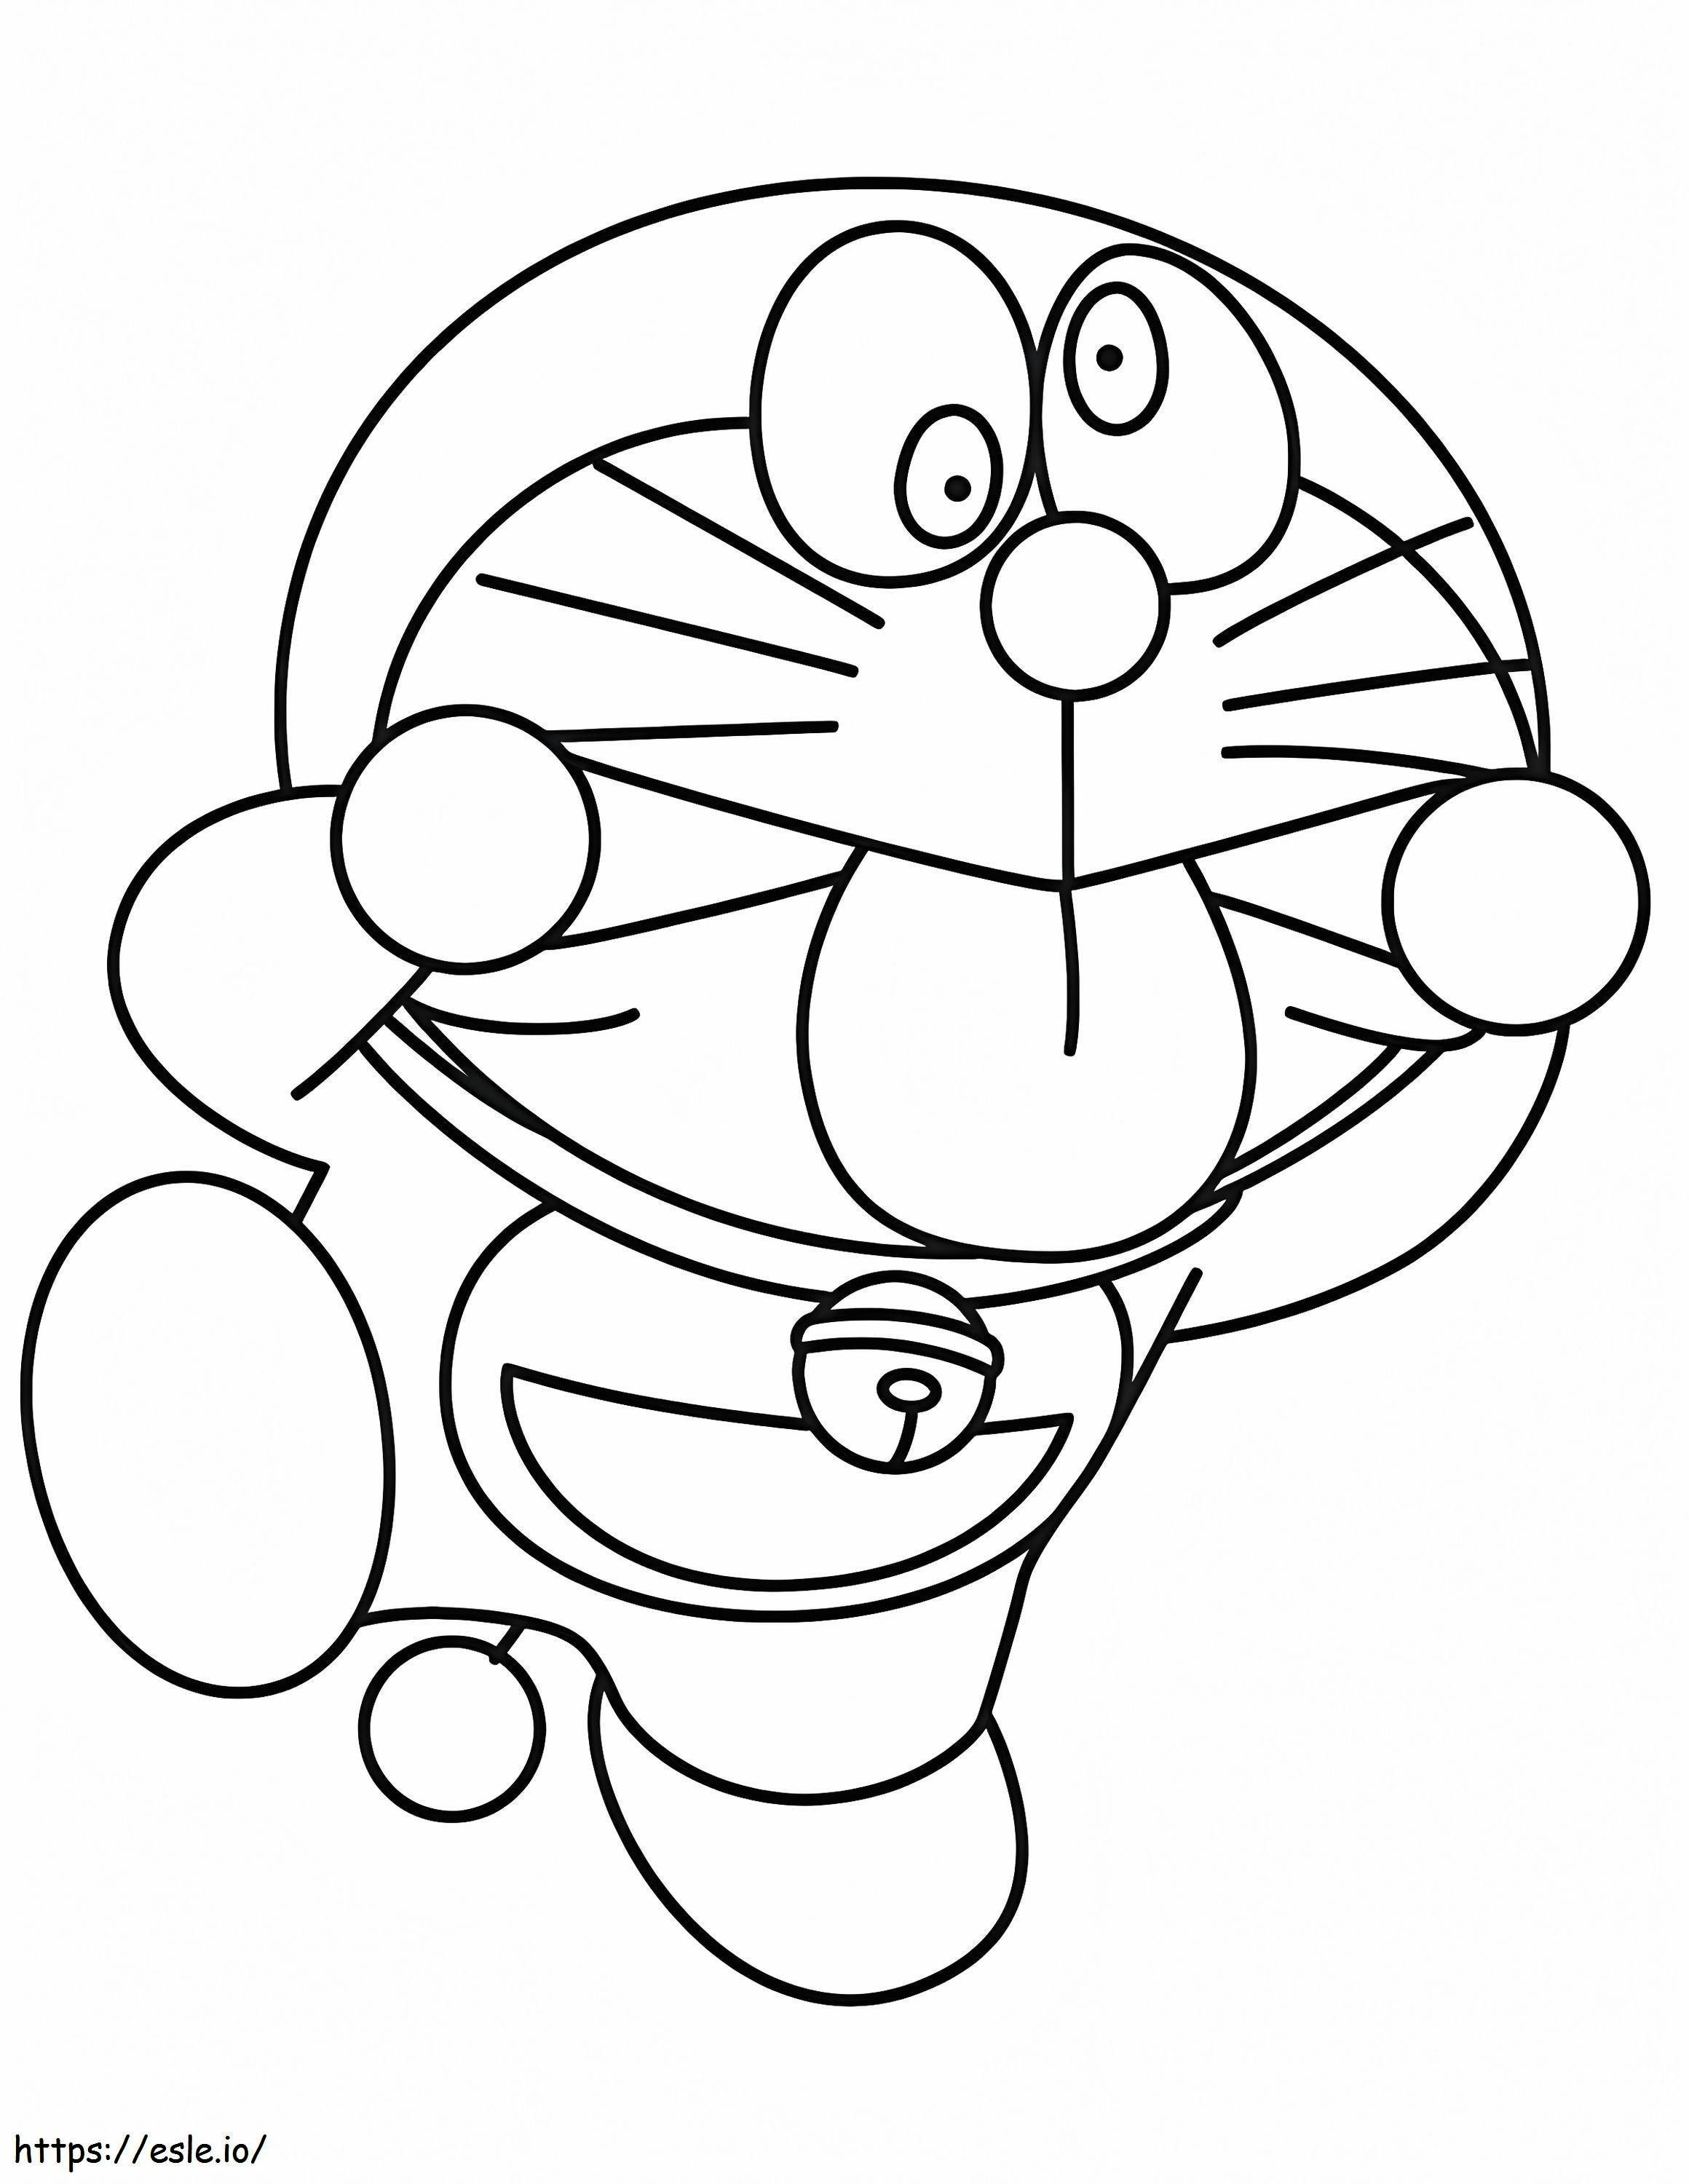  Lustiger Doraemon A4 ausmalbilder